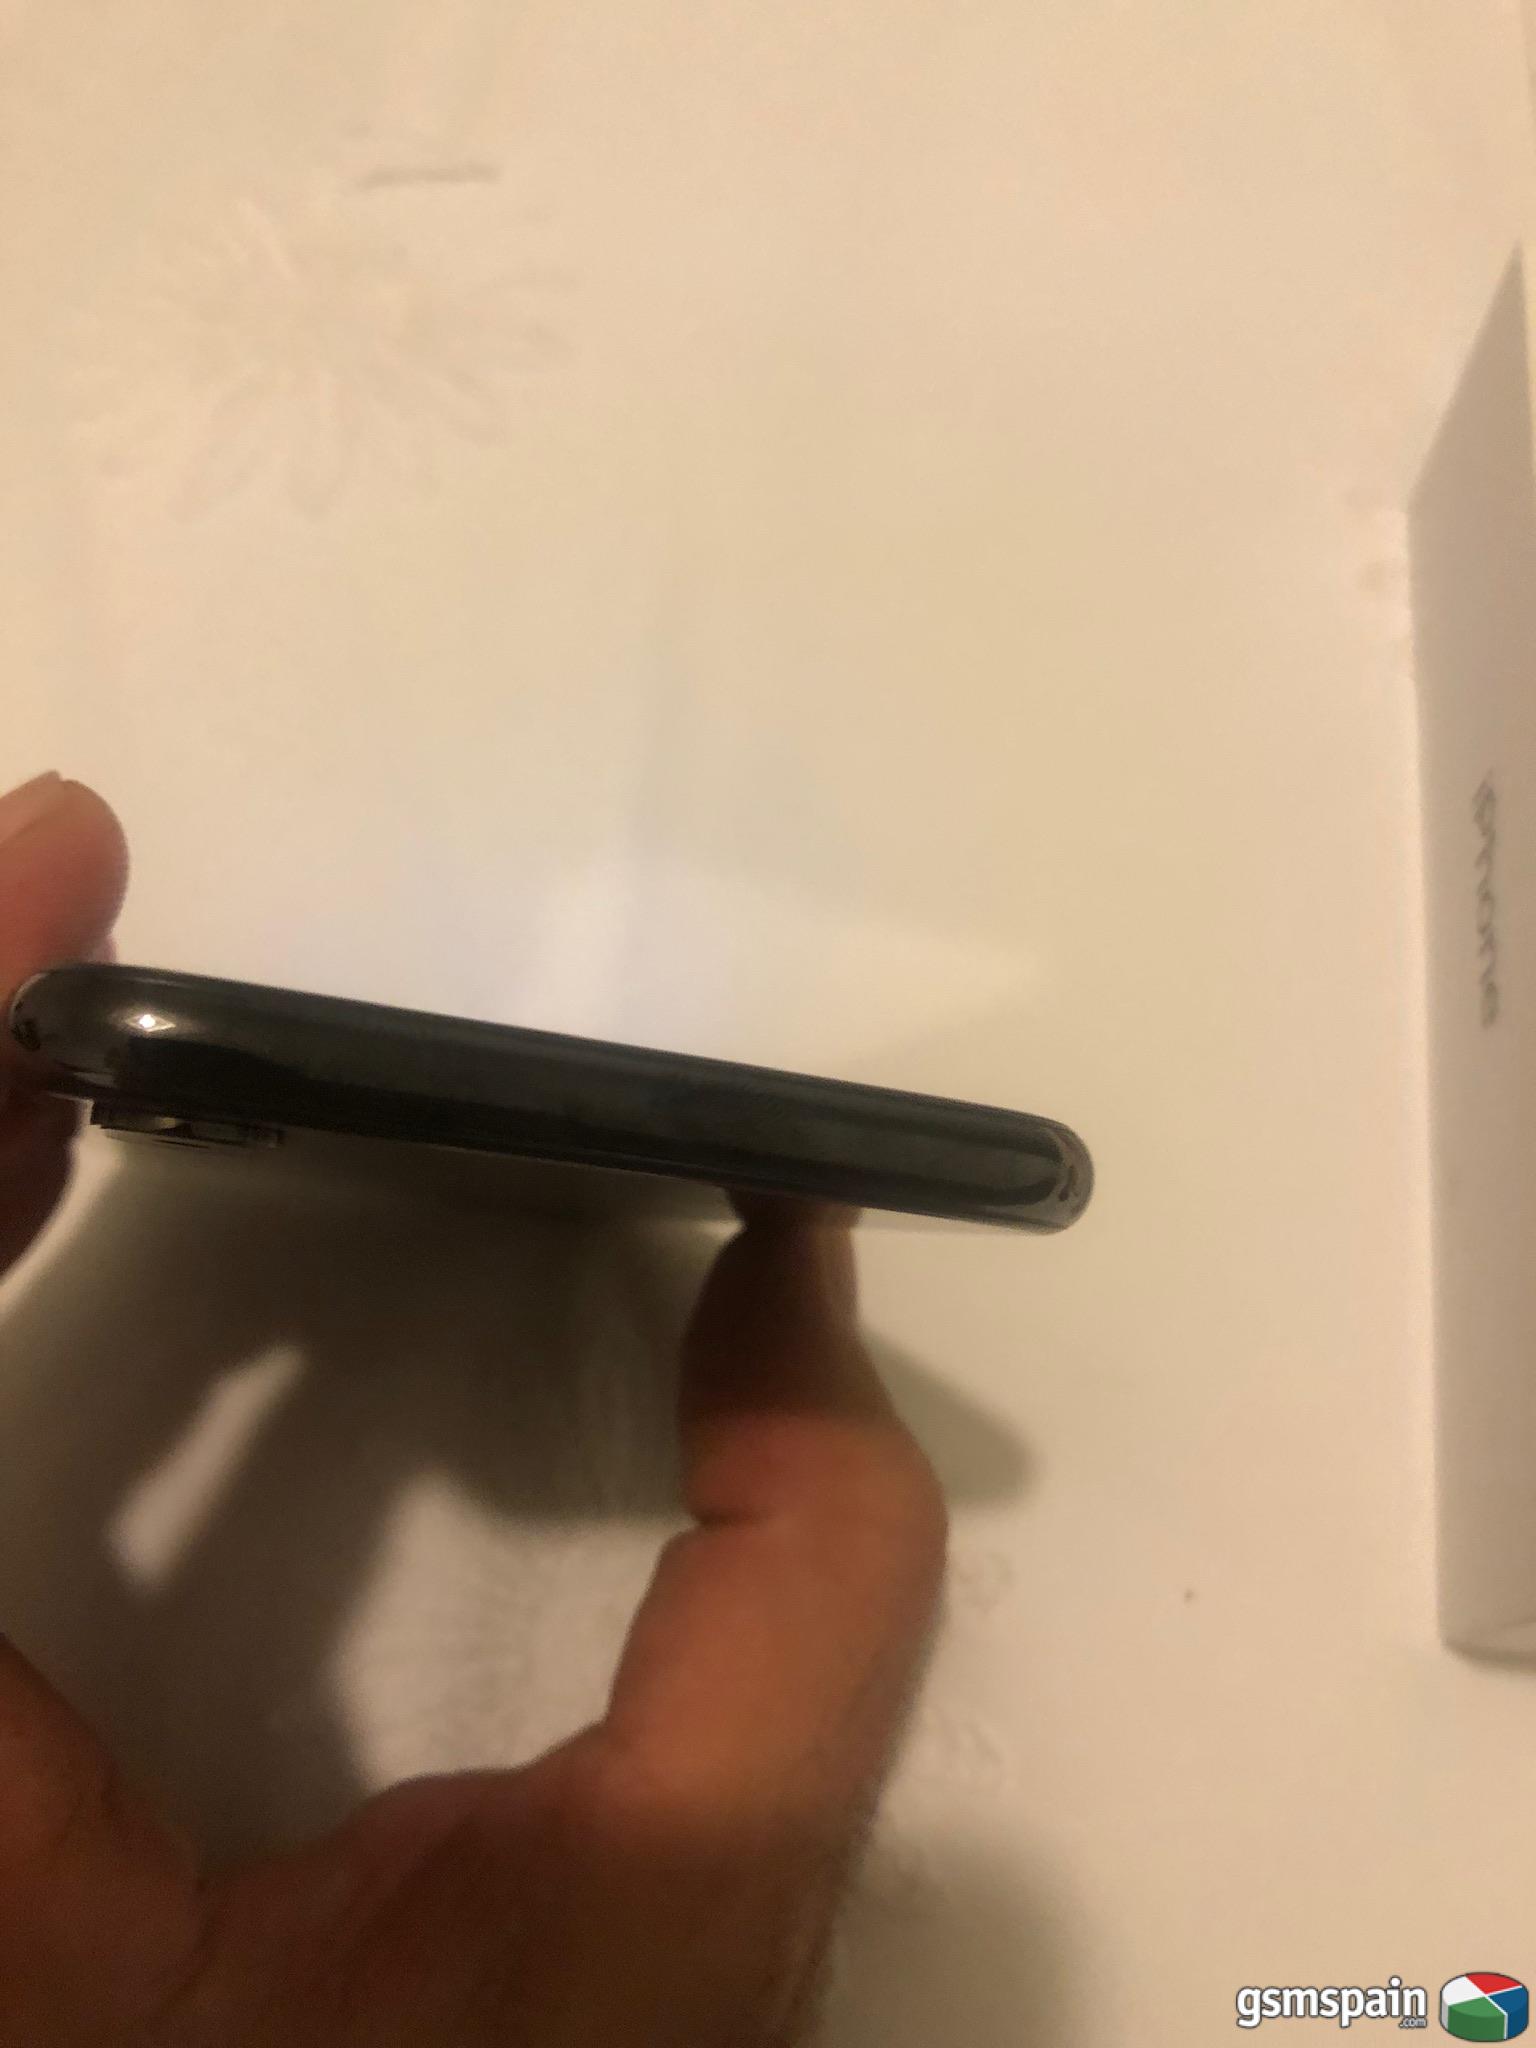 [VENDO] iPhone X gris espacial 480 completo impoluto